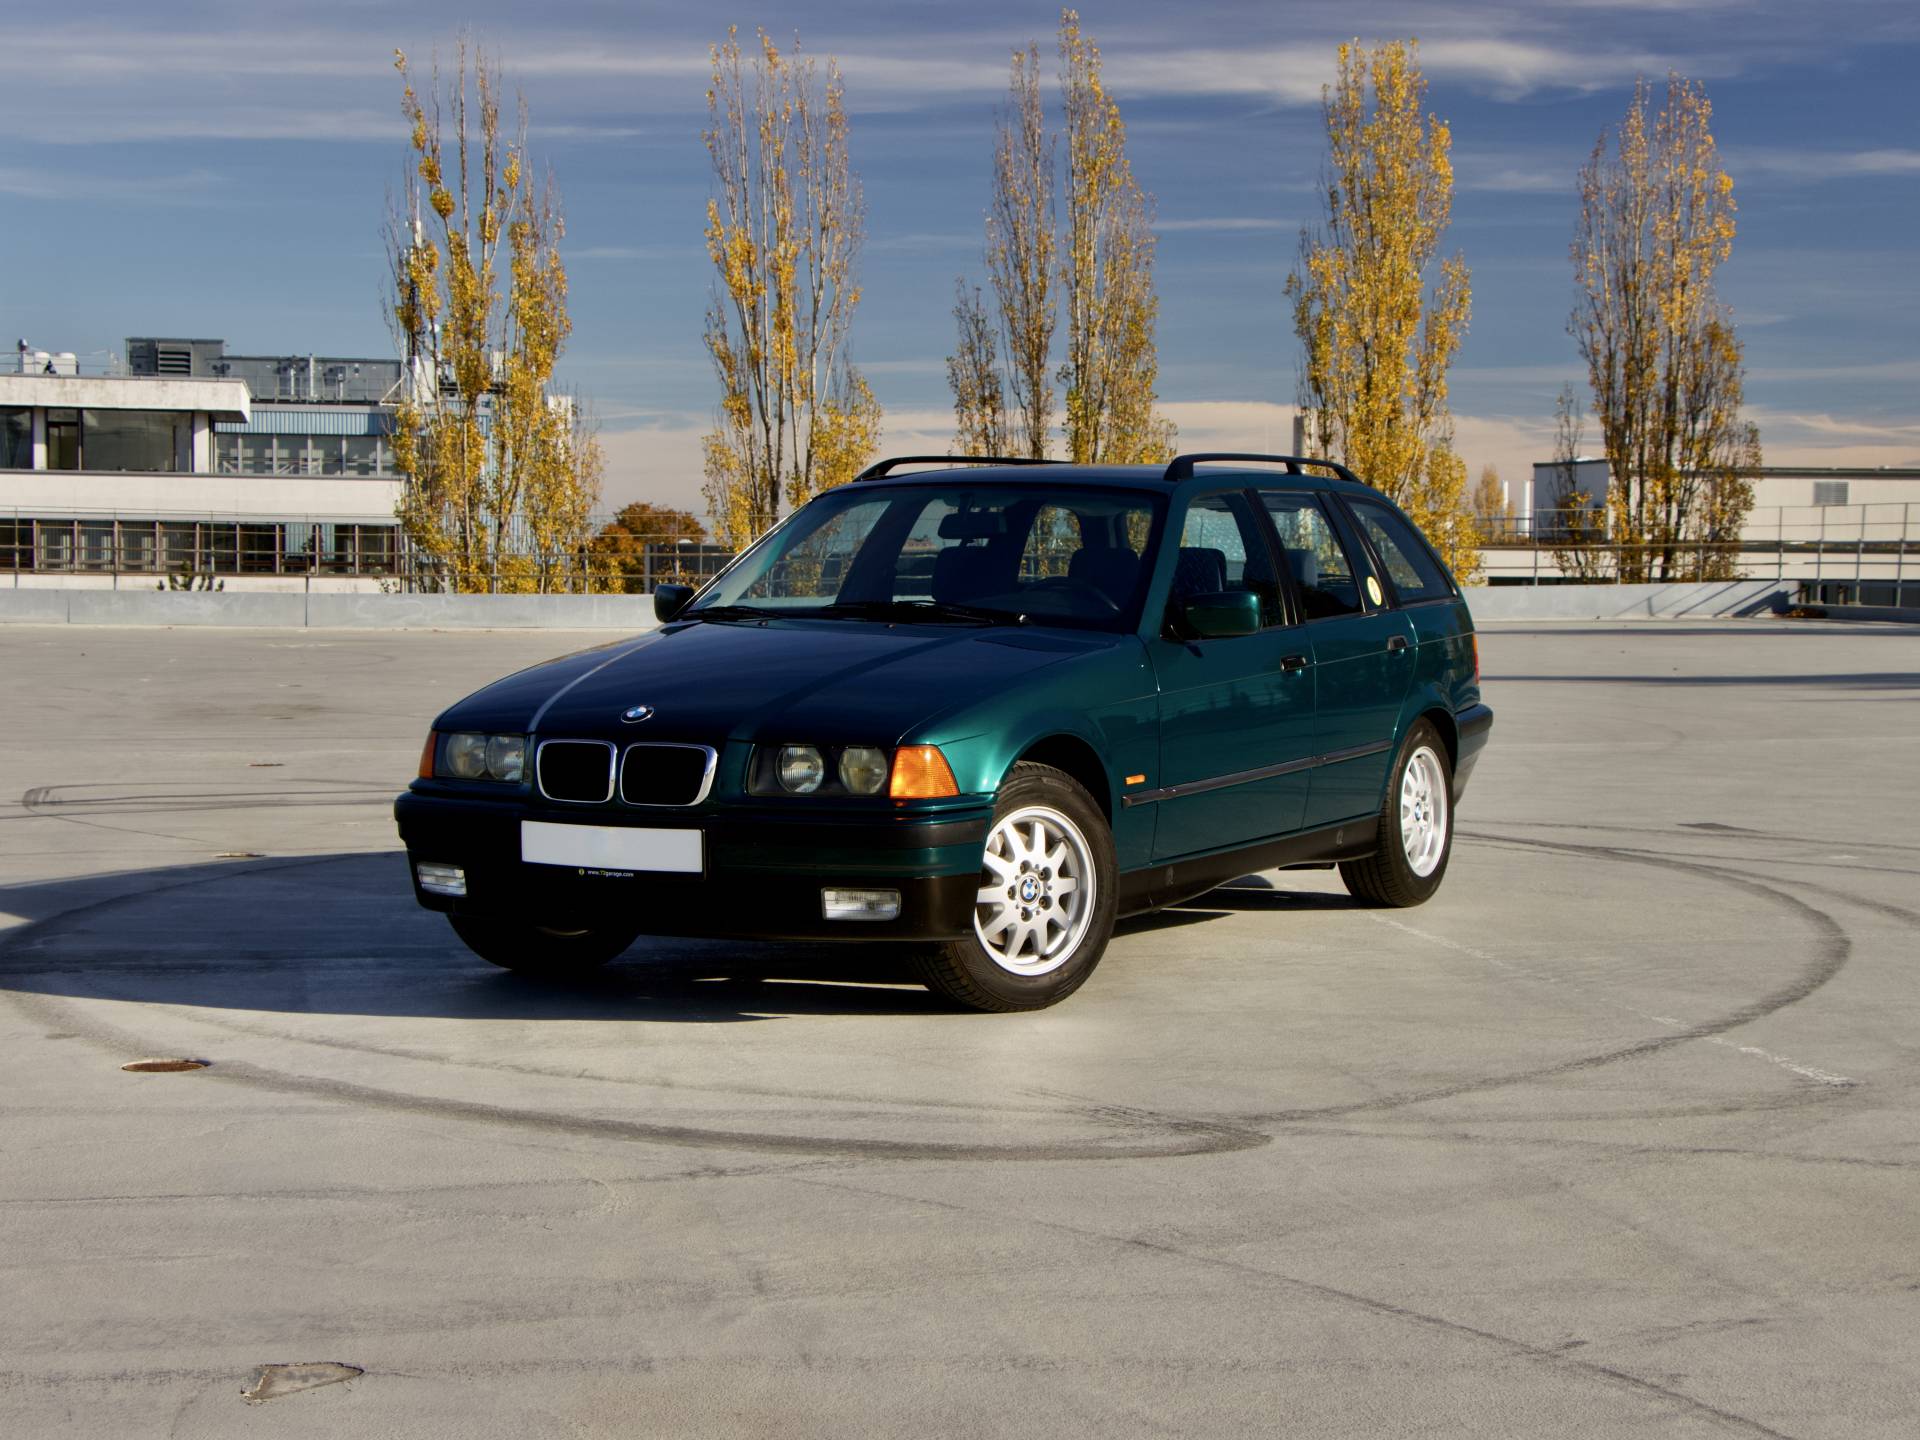 Melbourne moed Peer Te koop: BMW 318i Touring (1997) aangeboden voor € 5.500